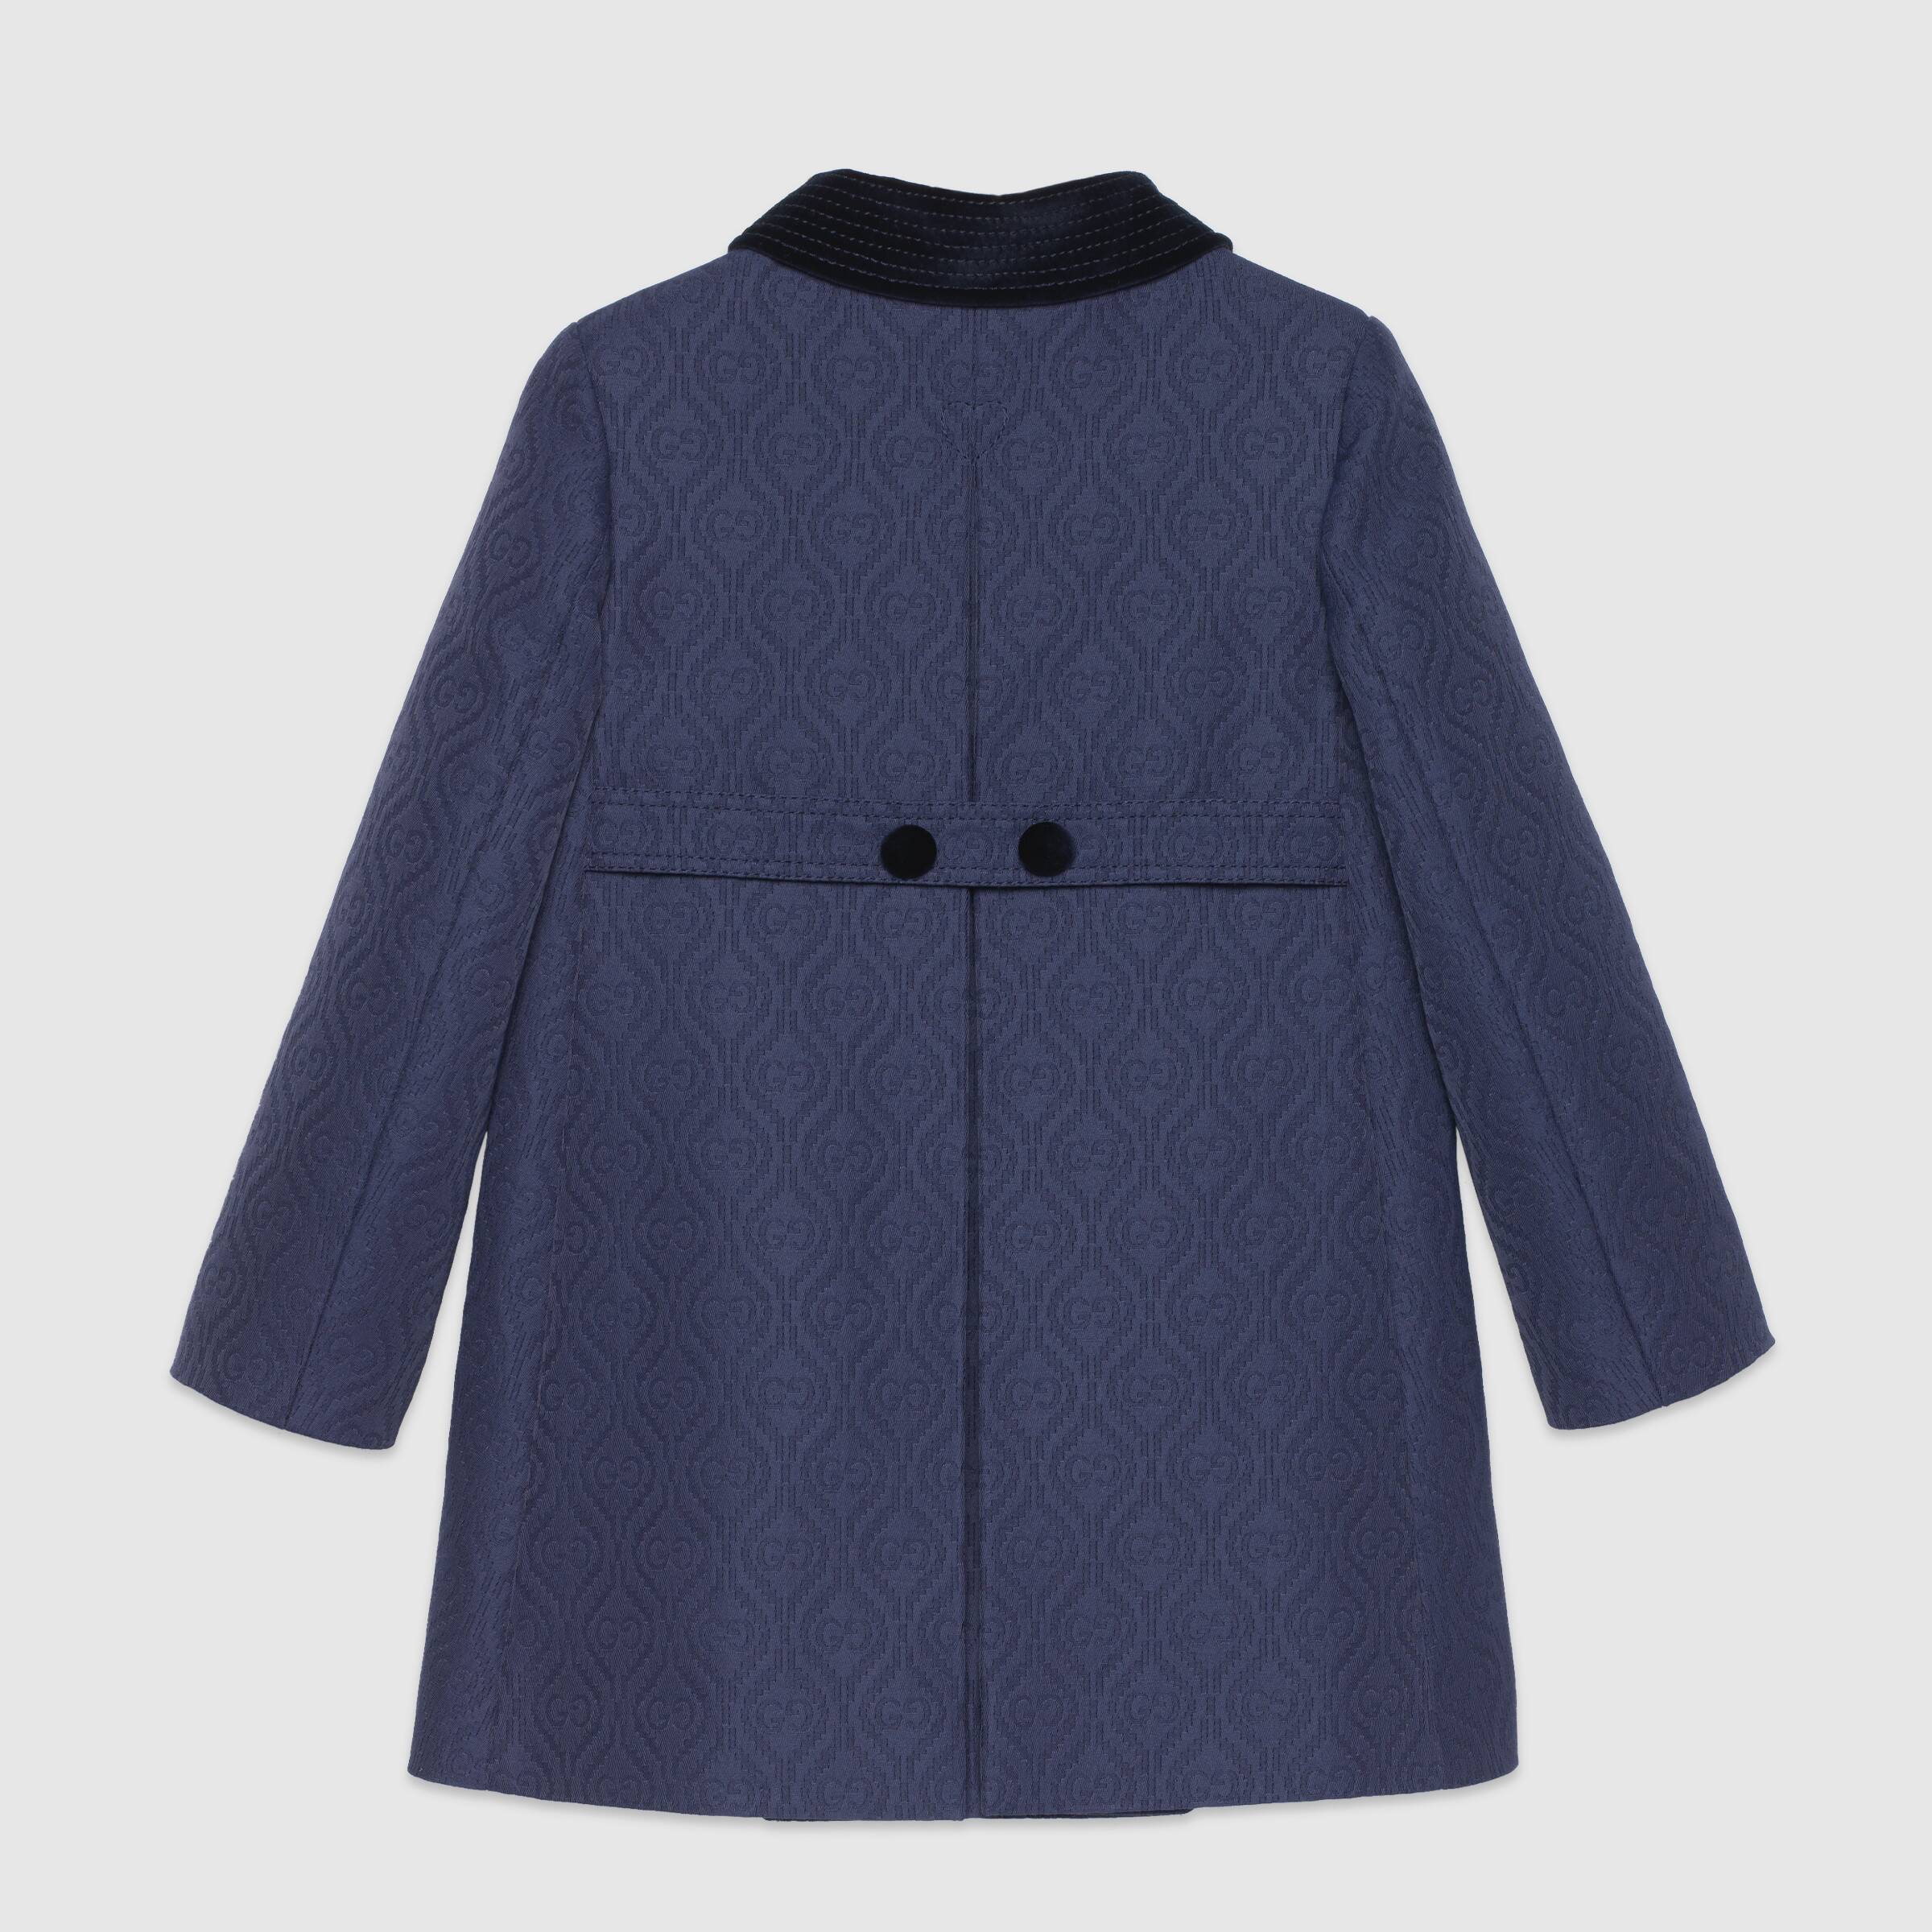 Girls Dark Blue Coat